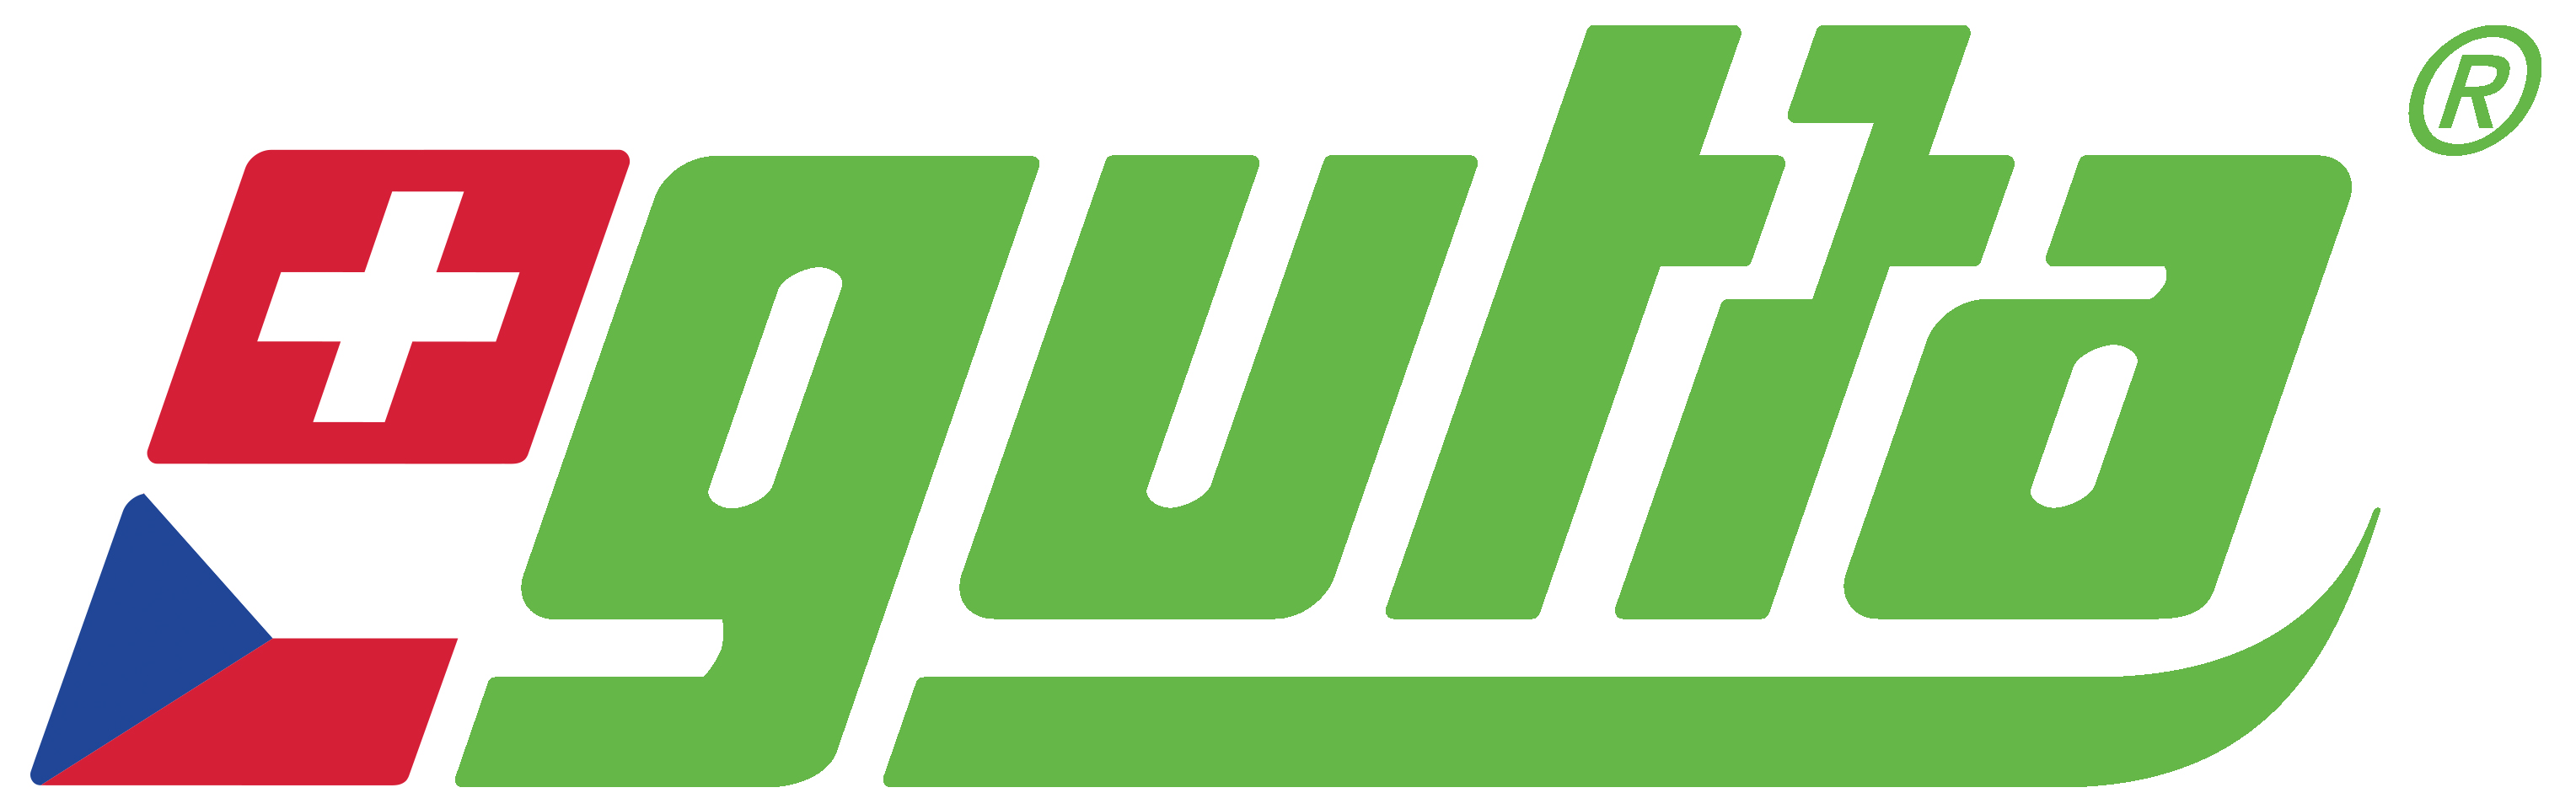 Logo-Gutta-2019-s-vlajkami-zelene-pruhledne